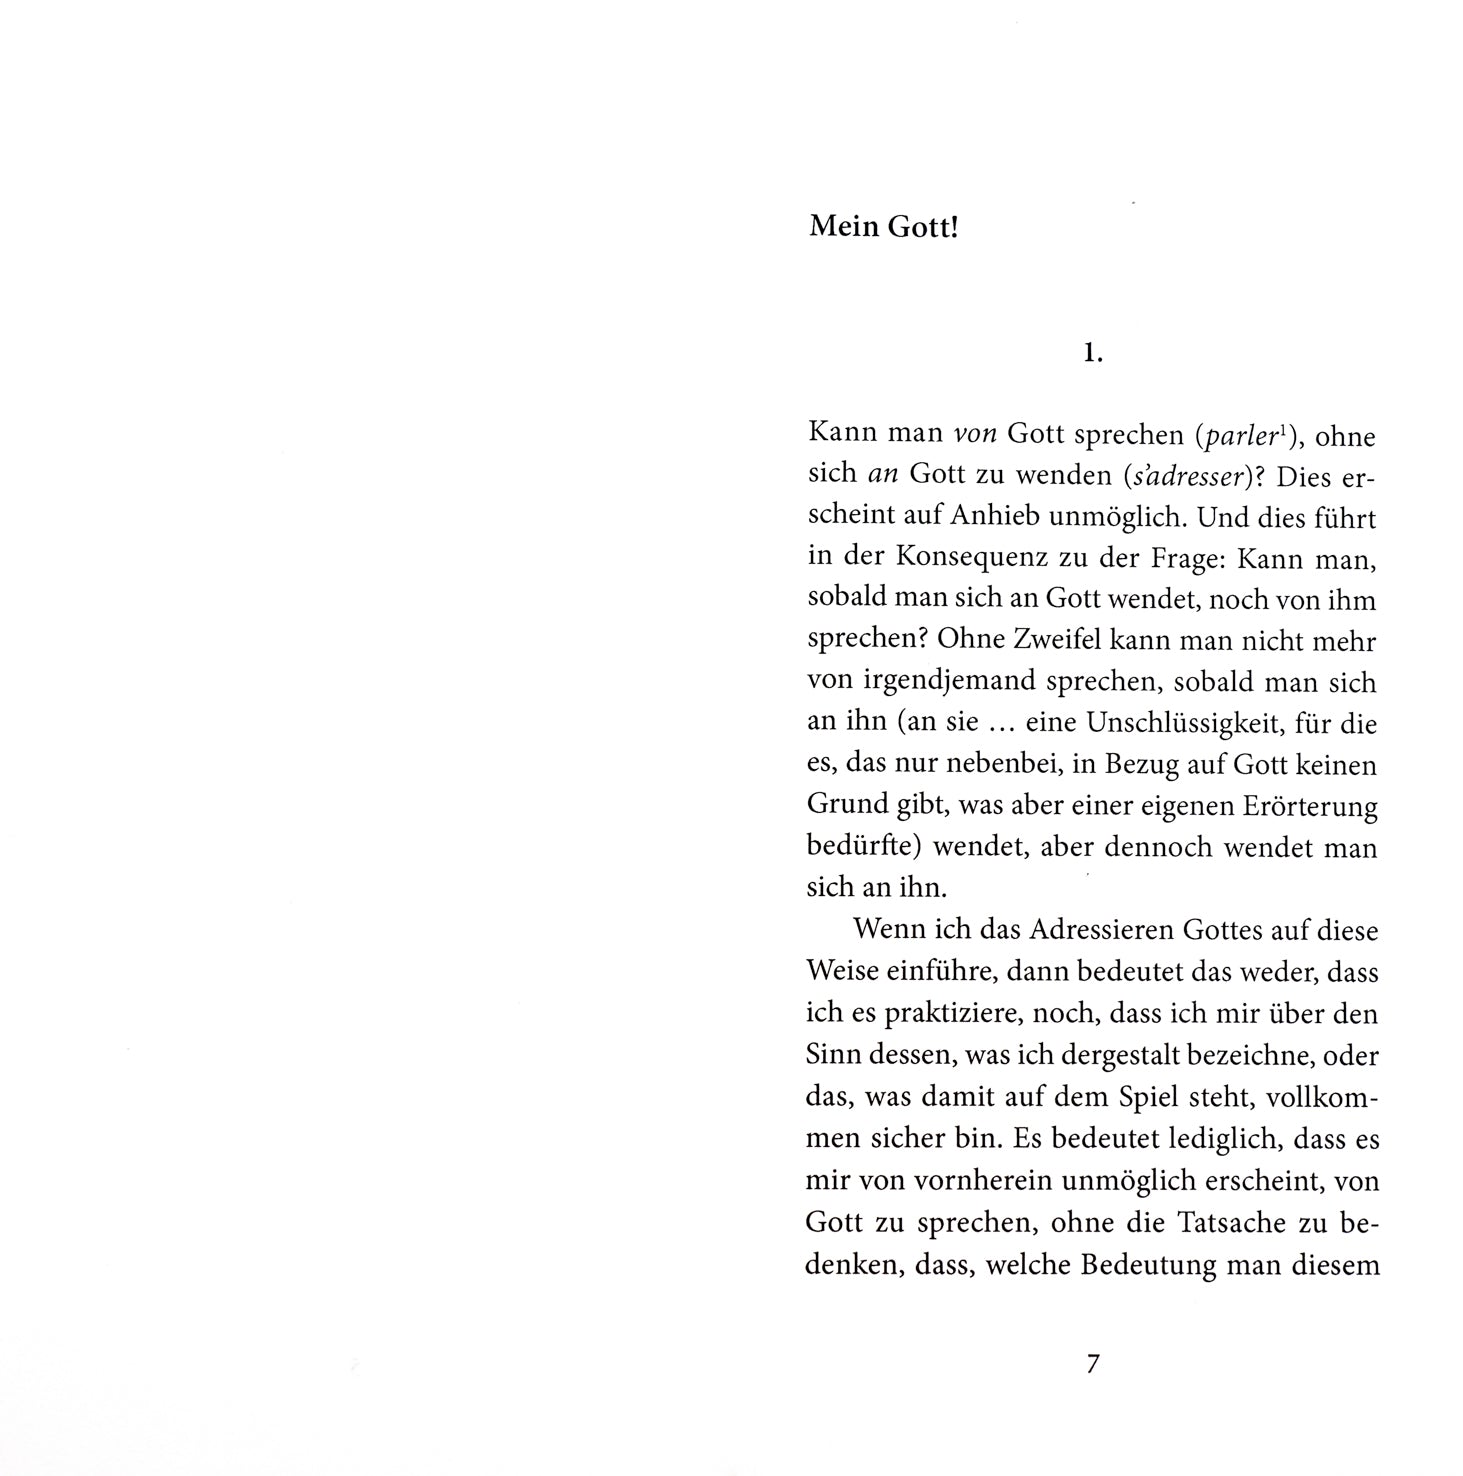 Doppelseite der Seiten 6 und 7. Auf der rechten Seite beginnt der Text mit dem Titel 'Mein Gott!'.